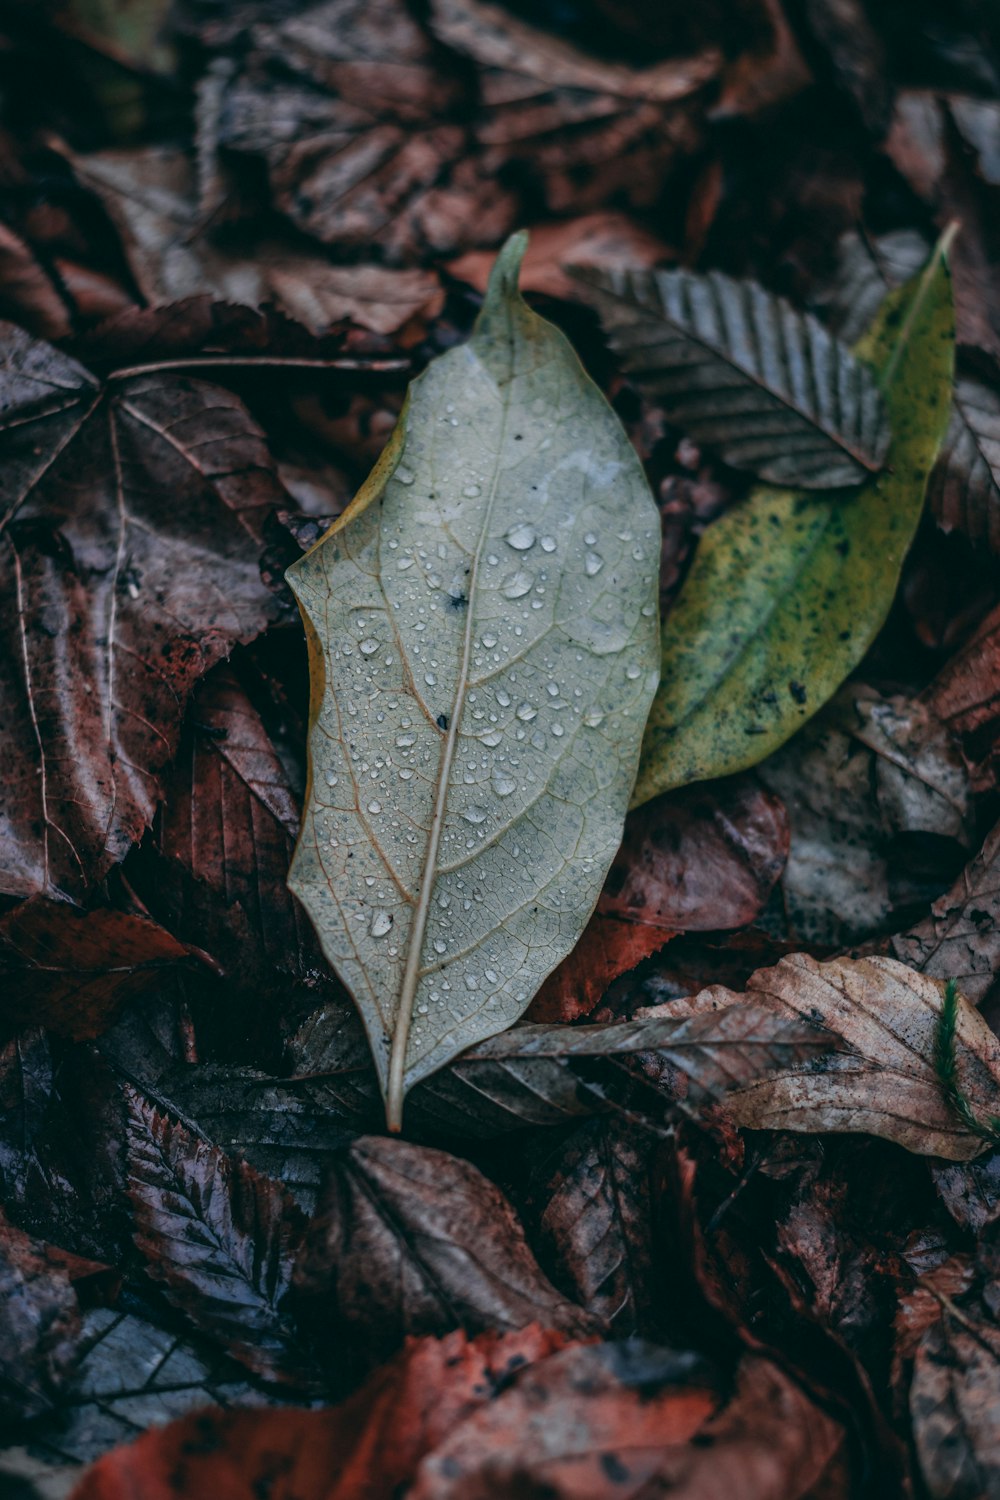 green leaf on brown dried leaves